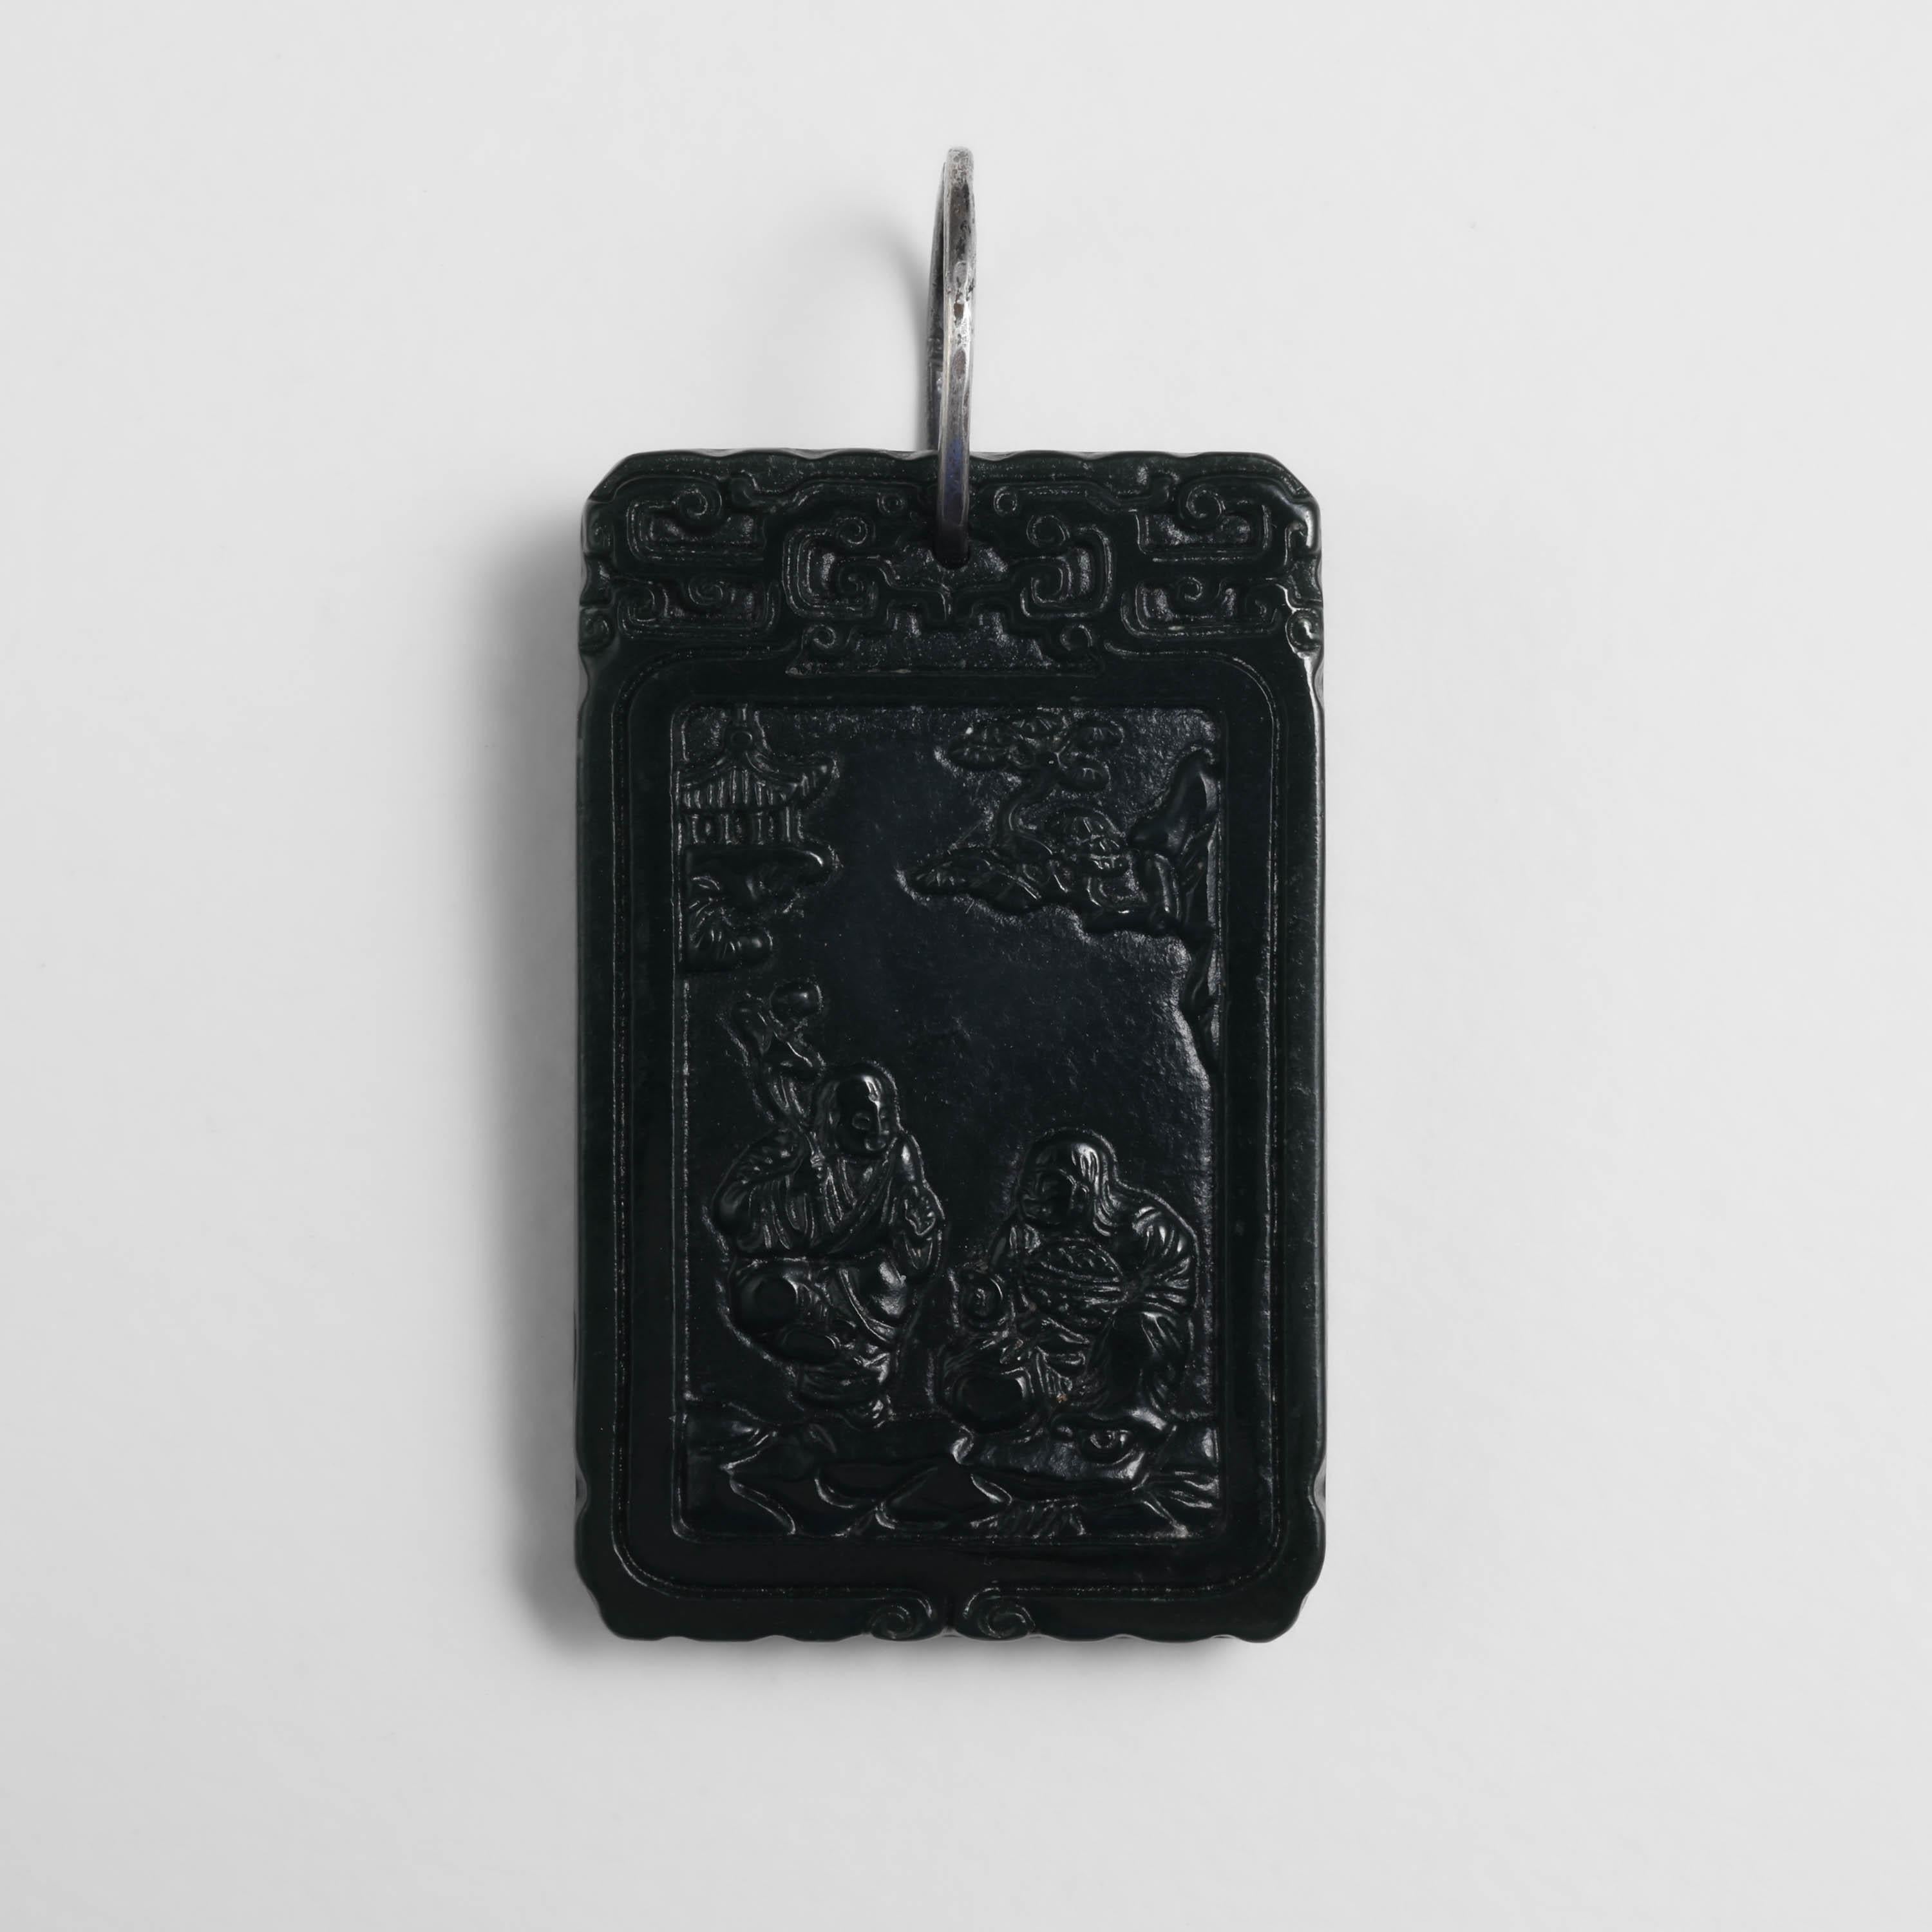 Cette exquise et rare tablette en jade noir date de la période Qing. 

La période de la dynastie Qing s'étend de 1636 à 1912. La datation précise des objets en jade de cette époque est une science imprécise. Cela s'explique en partie par le fait que